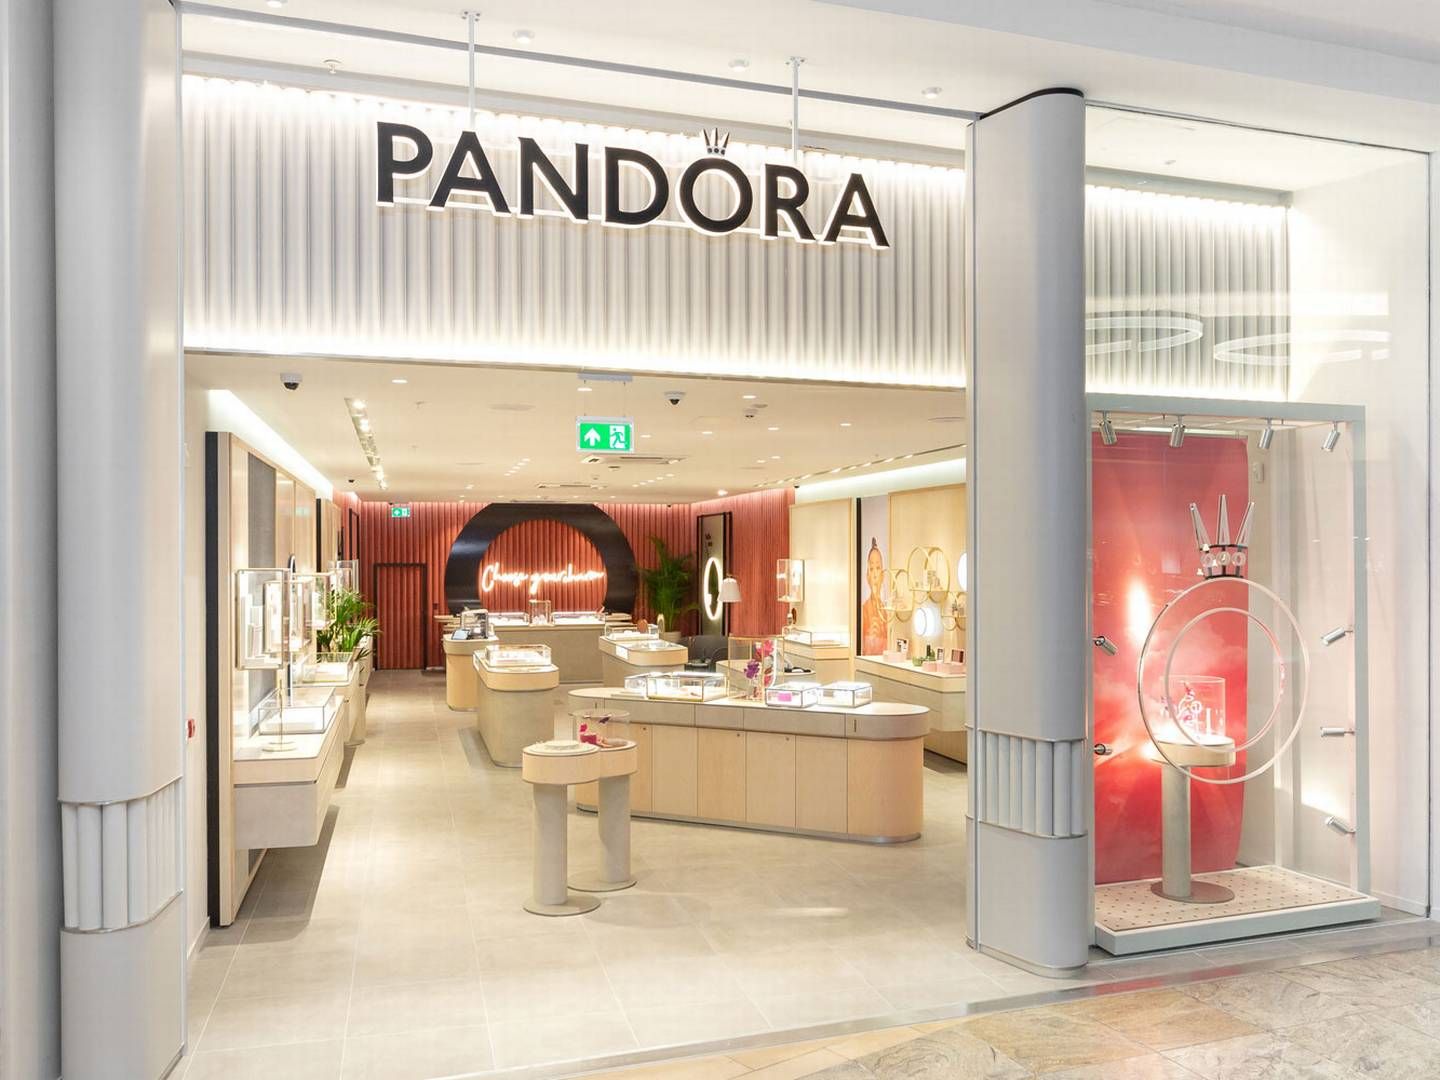 Pandora ventes i fjerde kvartal foruden prisstigninger også at være hjulpet af lanceringen af ”Diamonds by Pandora”, vurderer Handelsbanken. | Foto: Pr/pandora